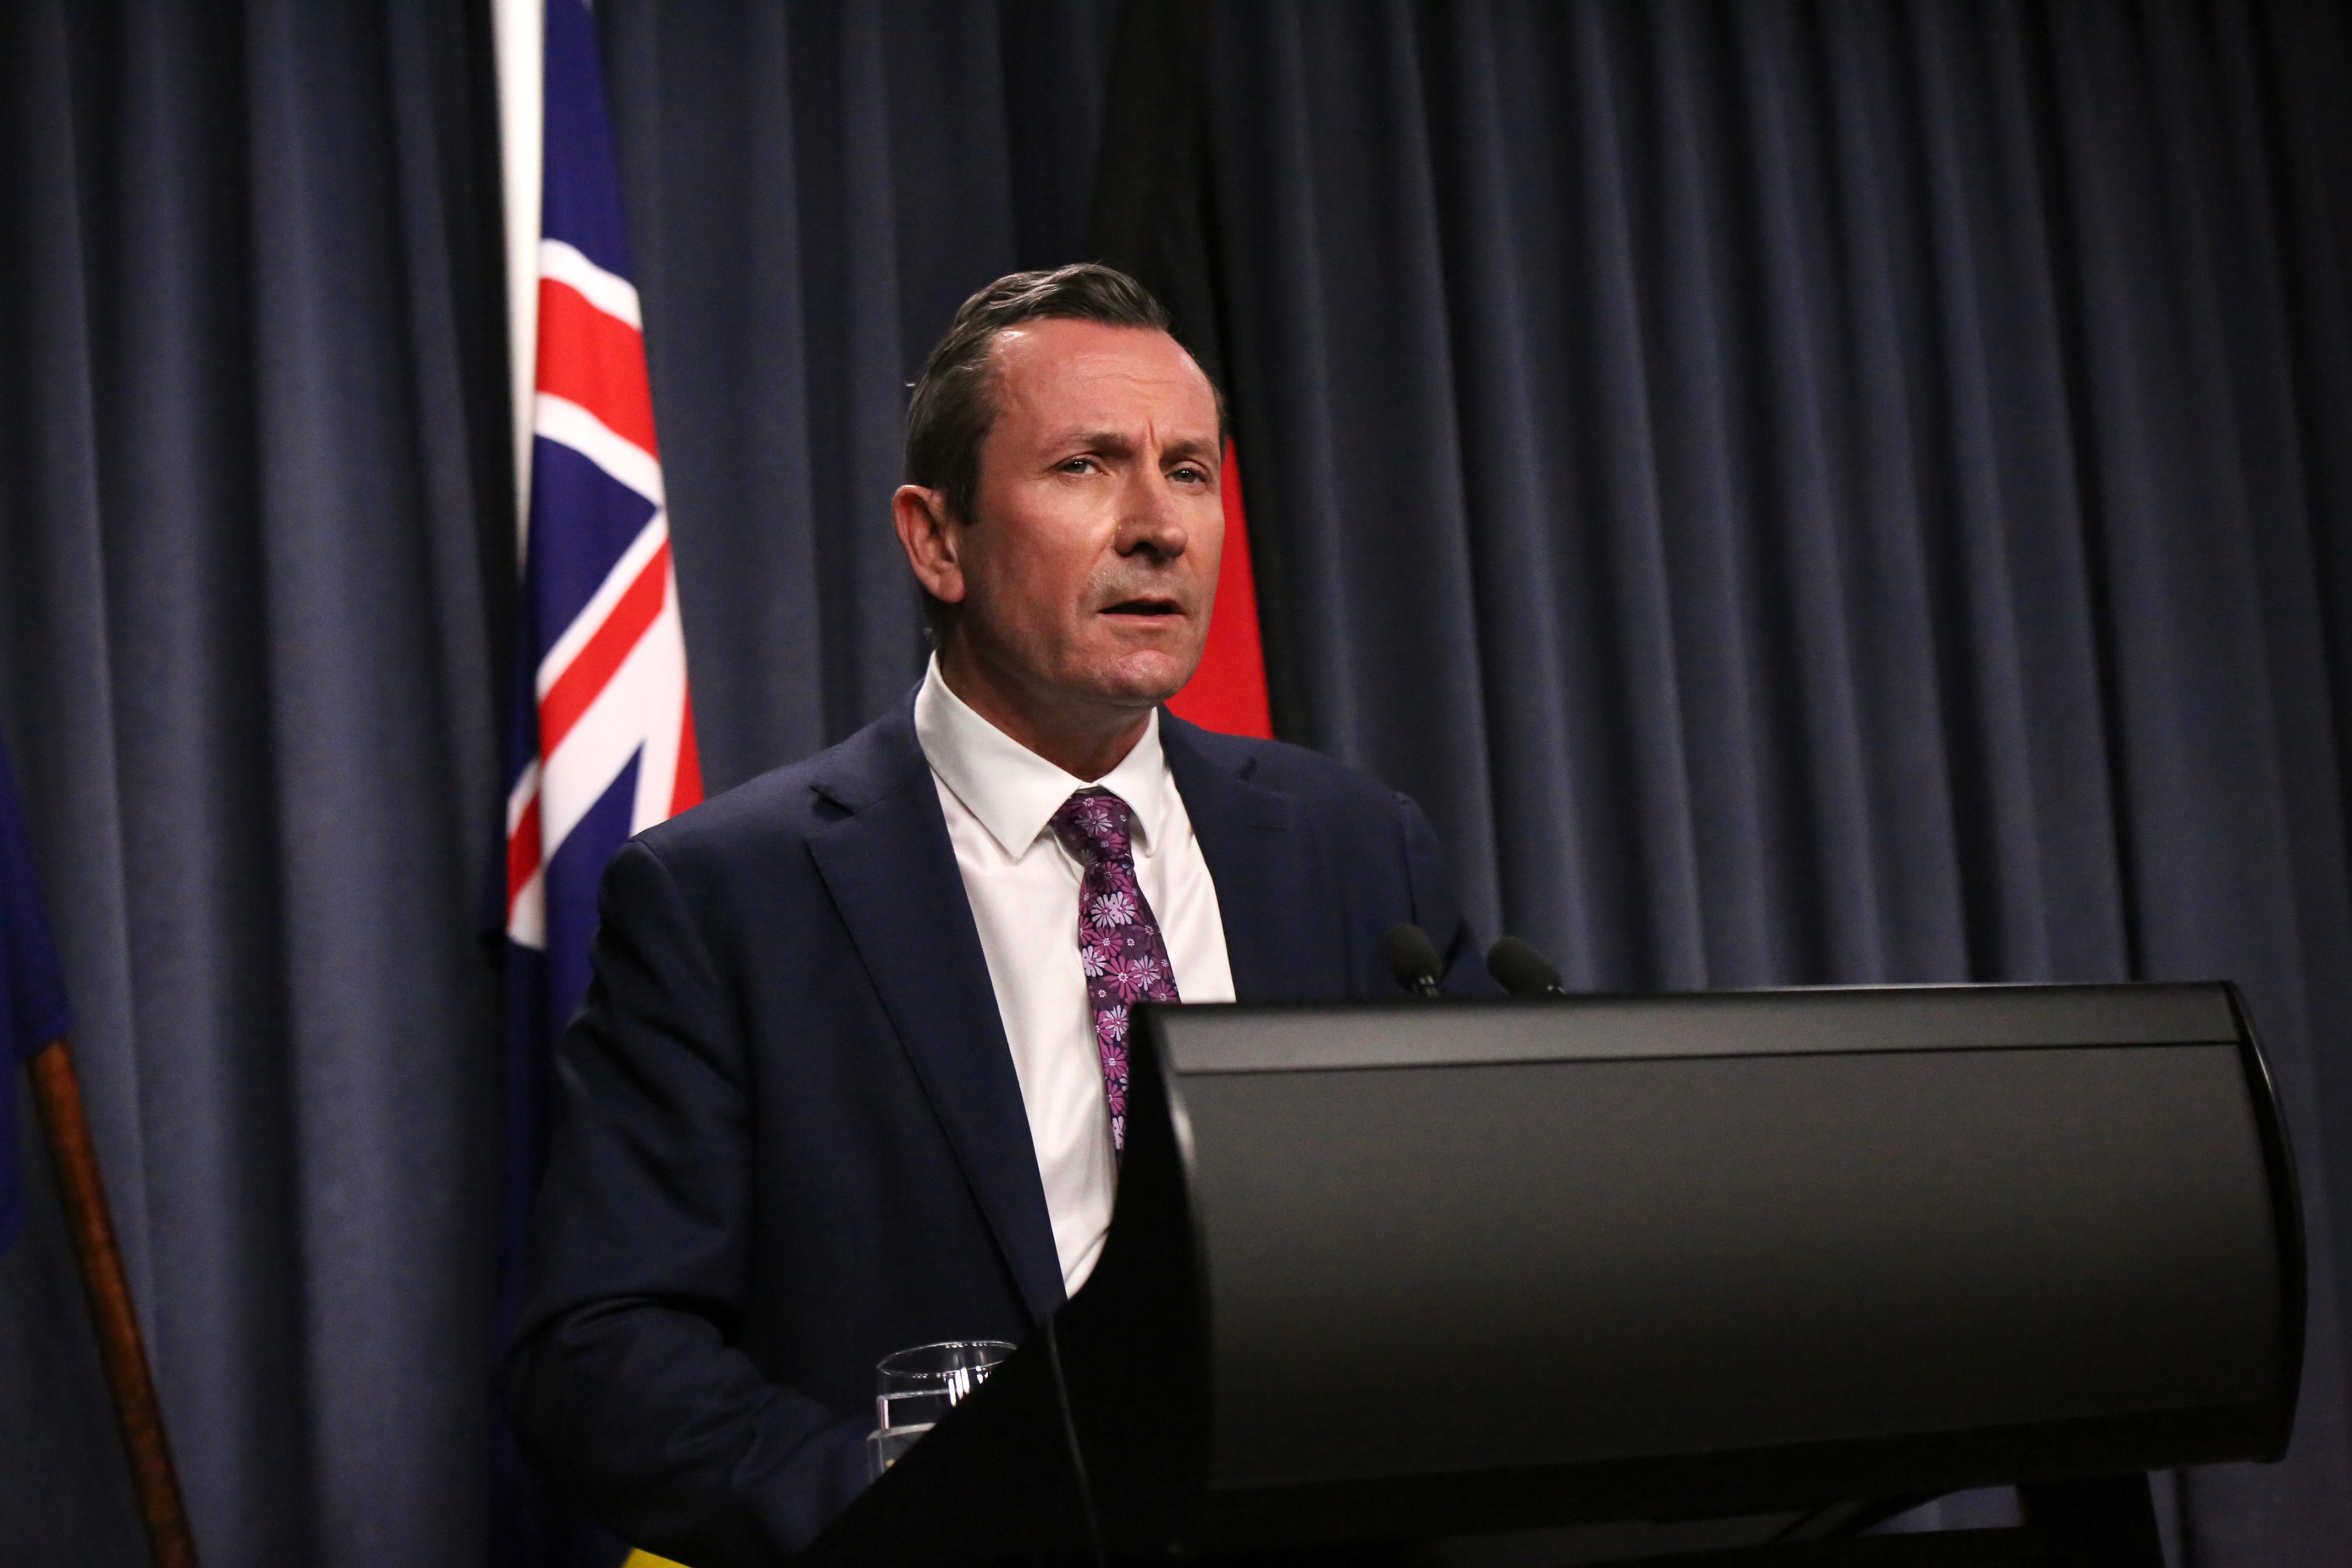 西澳州长 Mark McGowan 穿着西装打领带在室内媒体会议上发表讲话。 